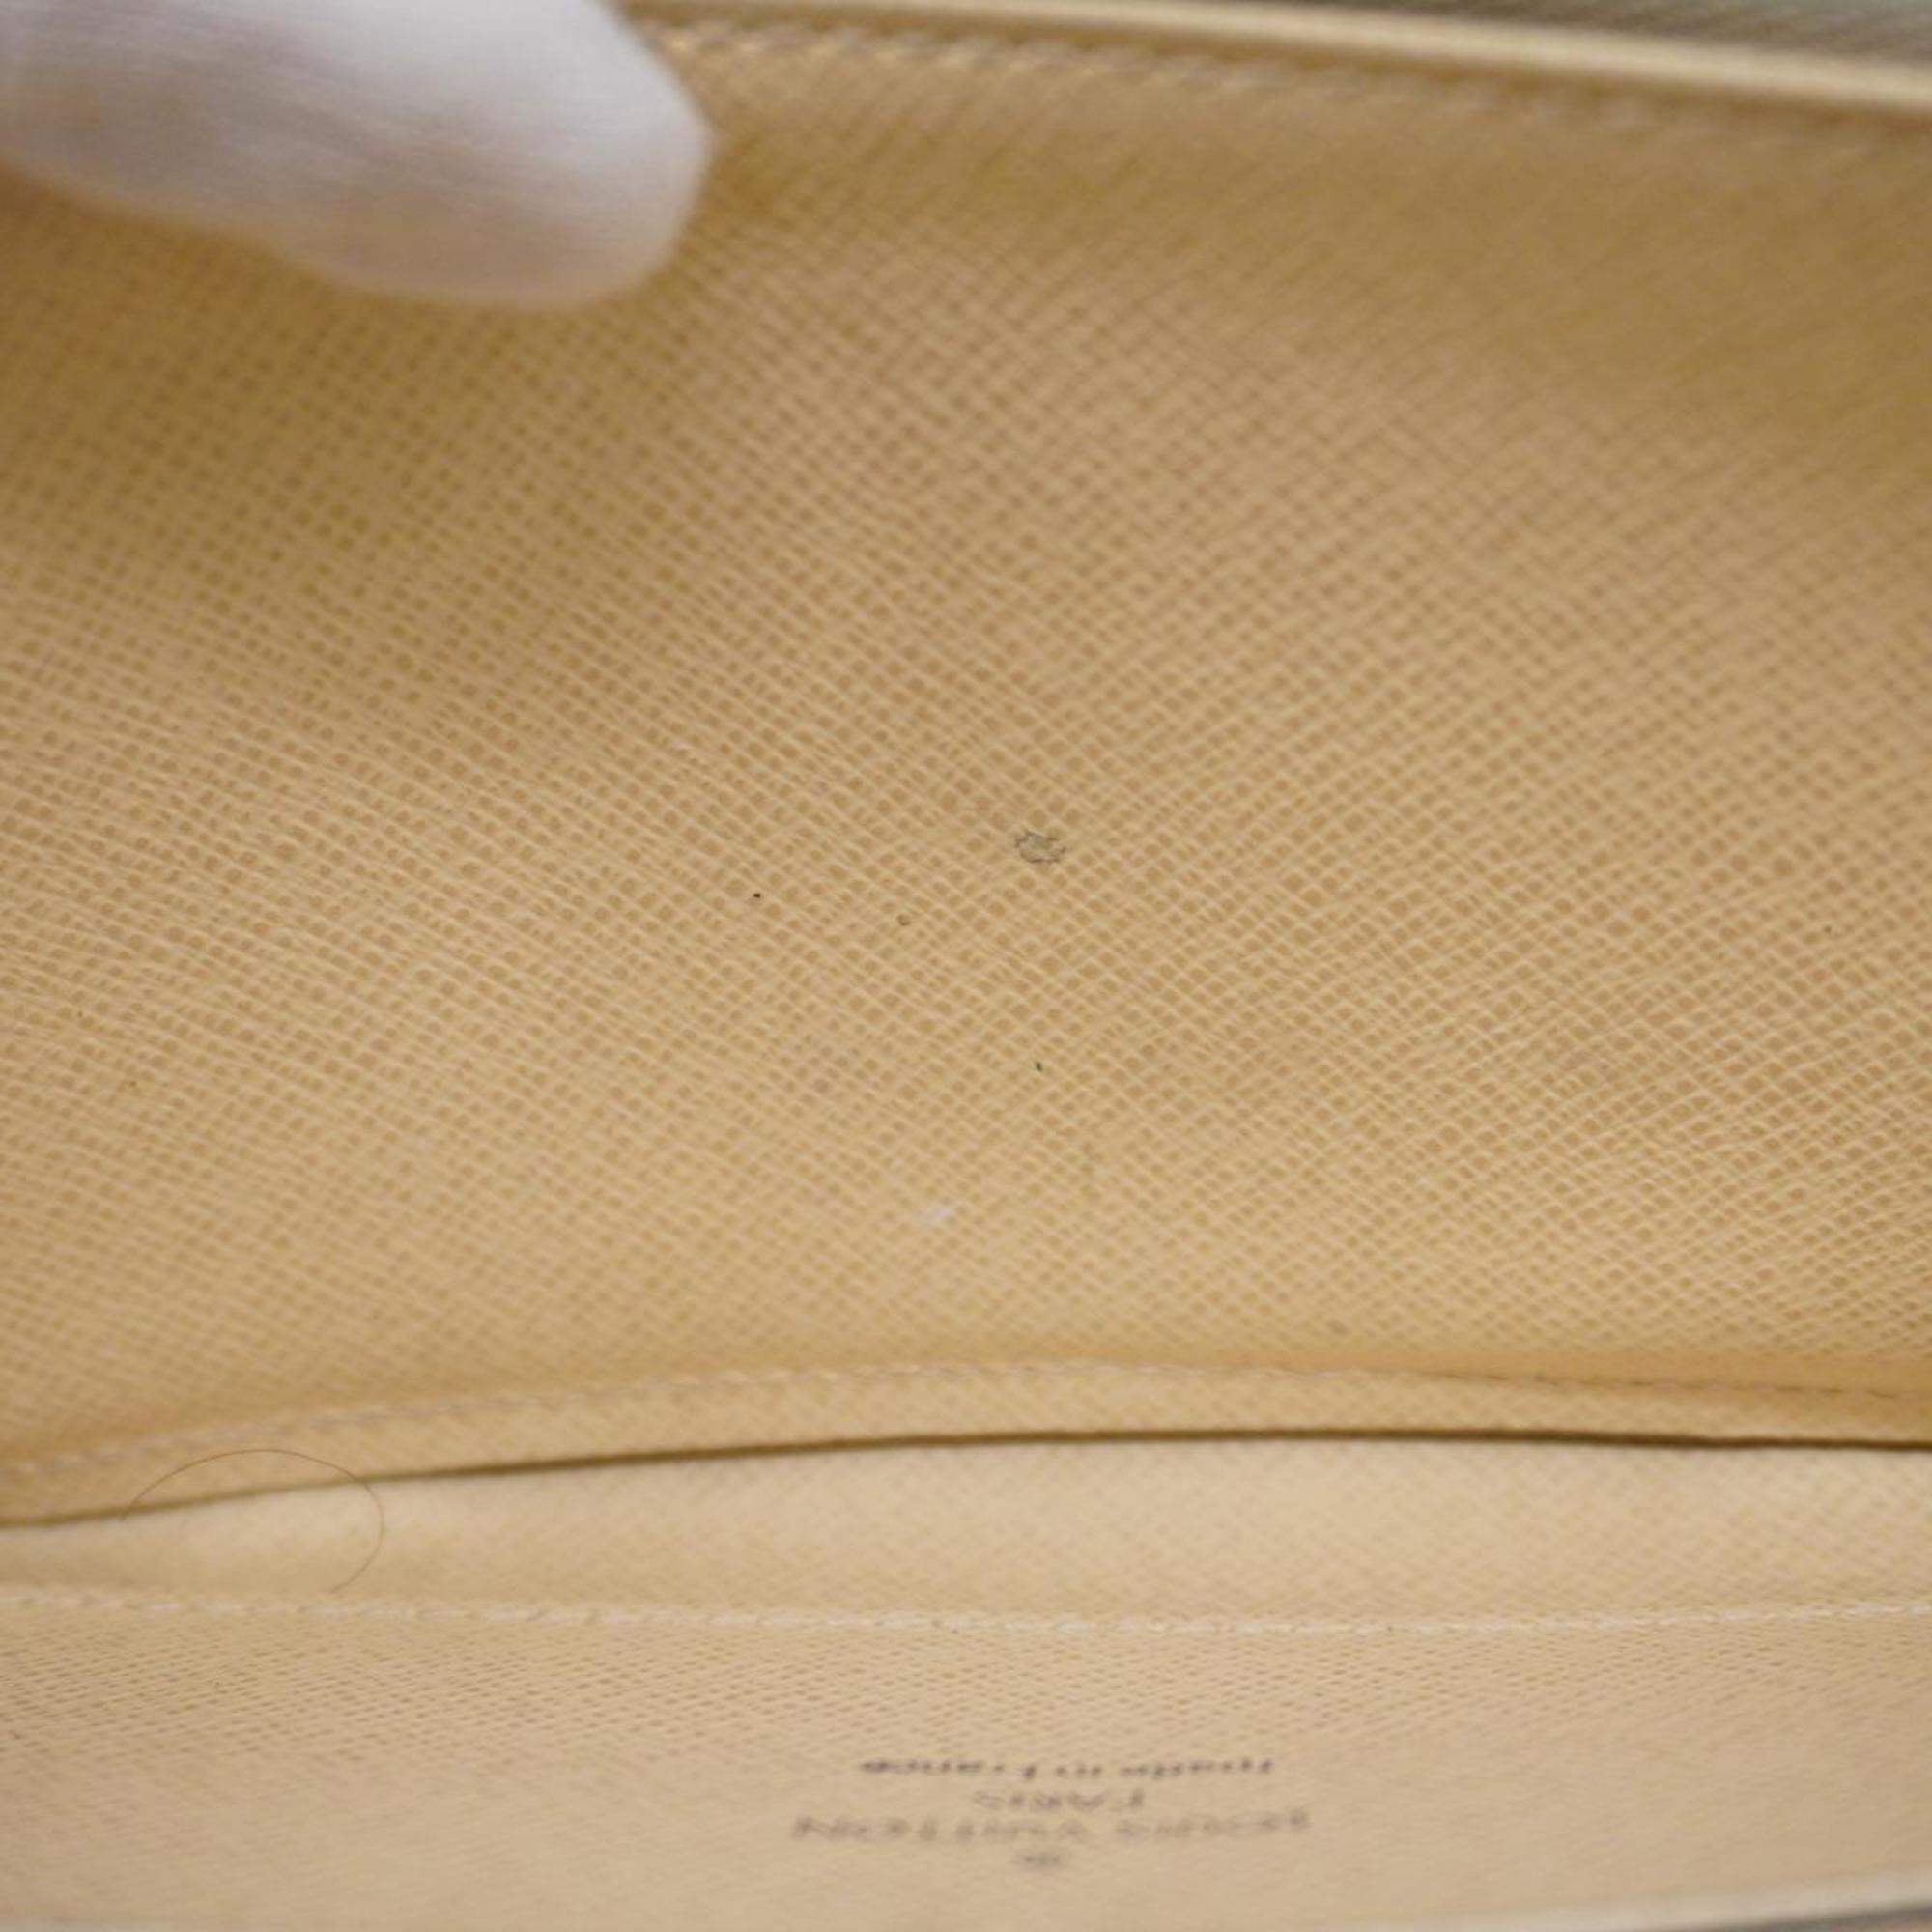 Louis Vuitton Long Wallet Damier Azur Zippy N60019 White Men's Women's